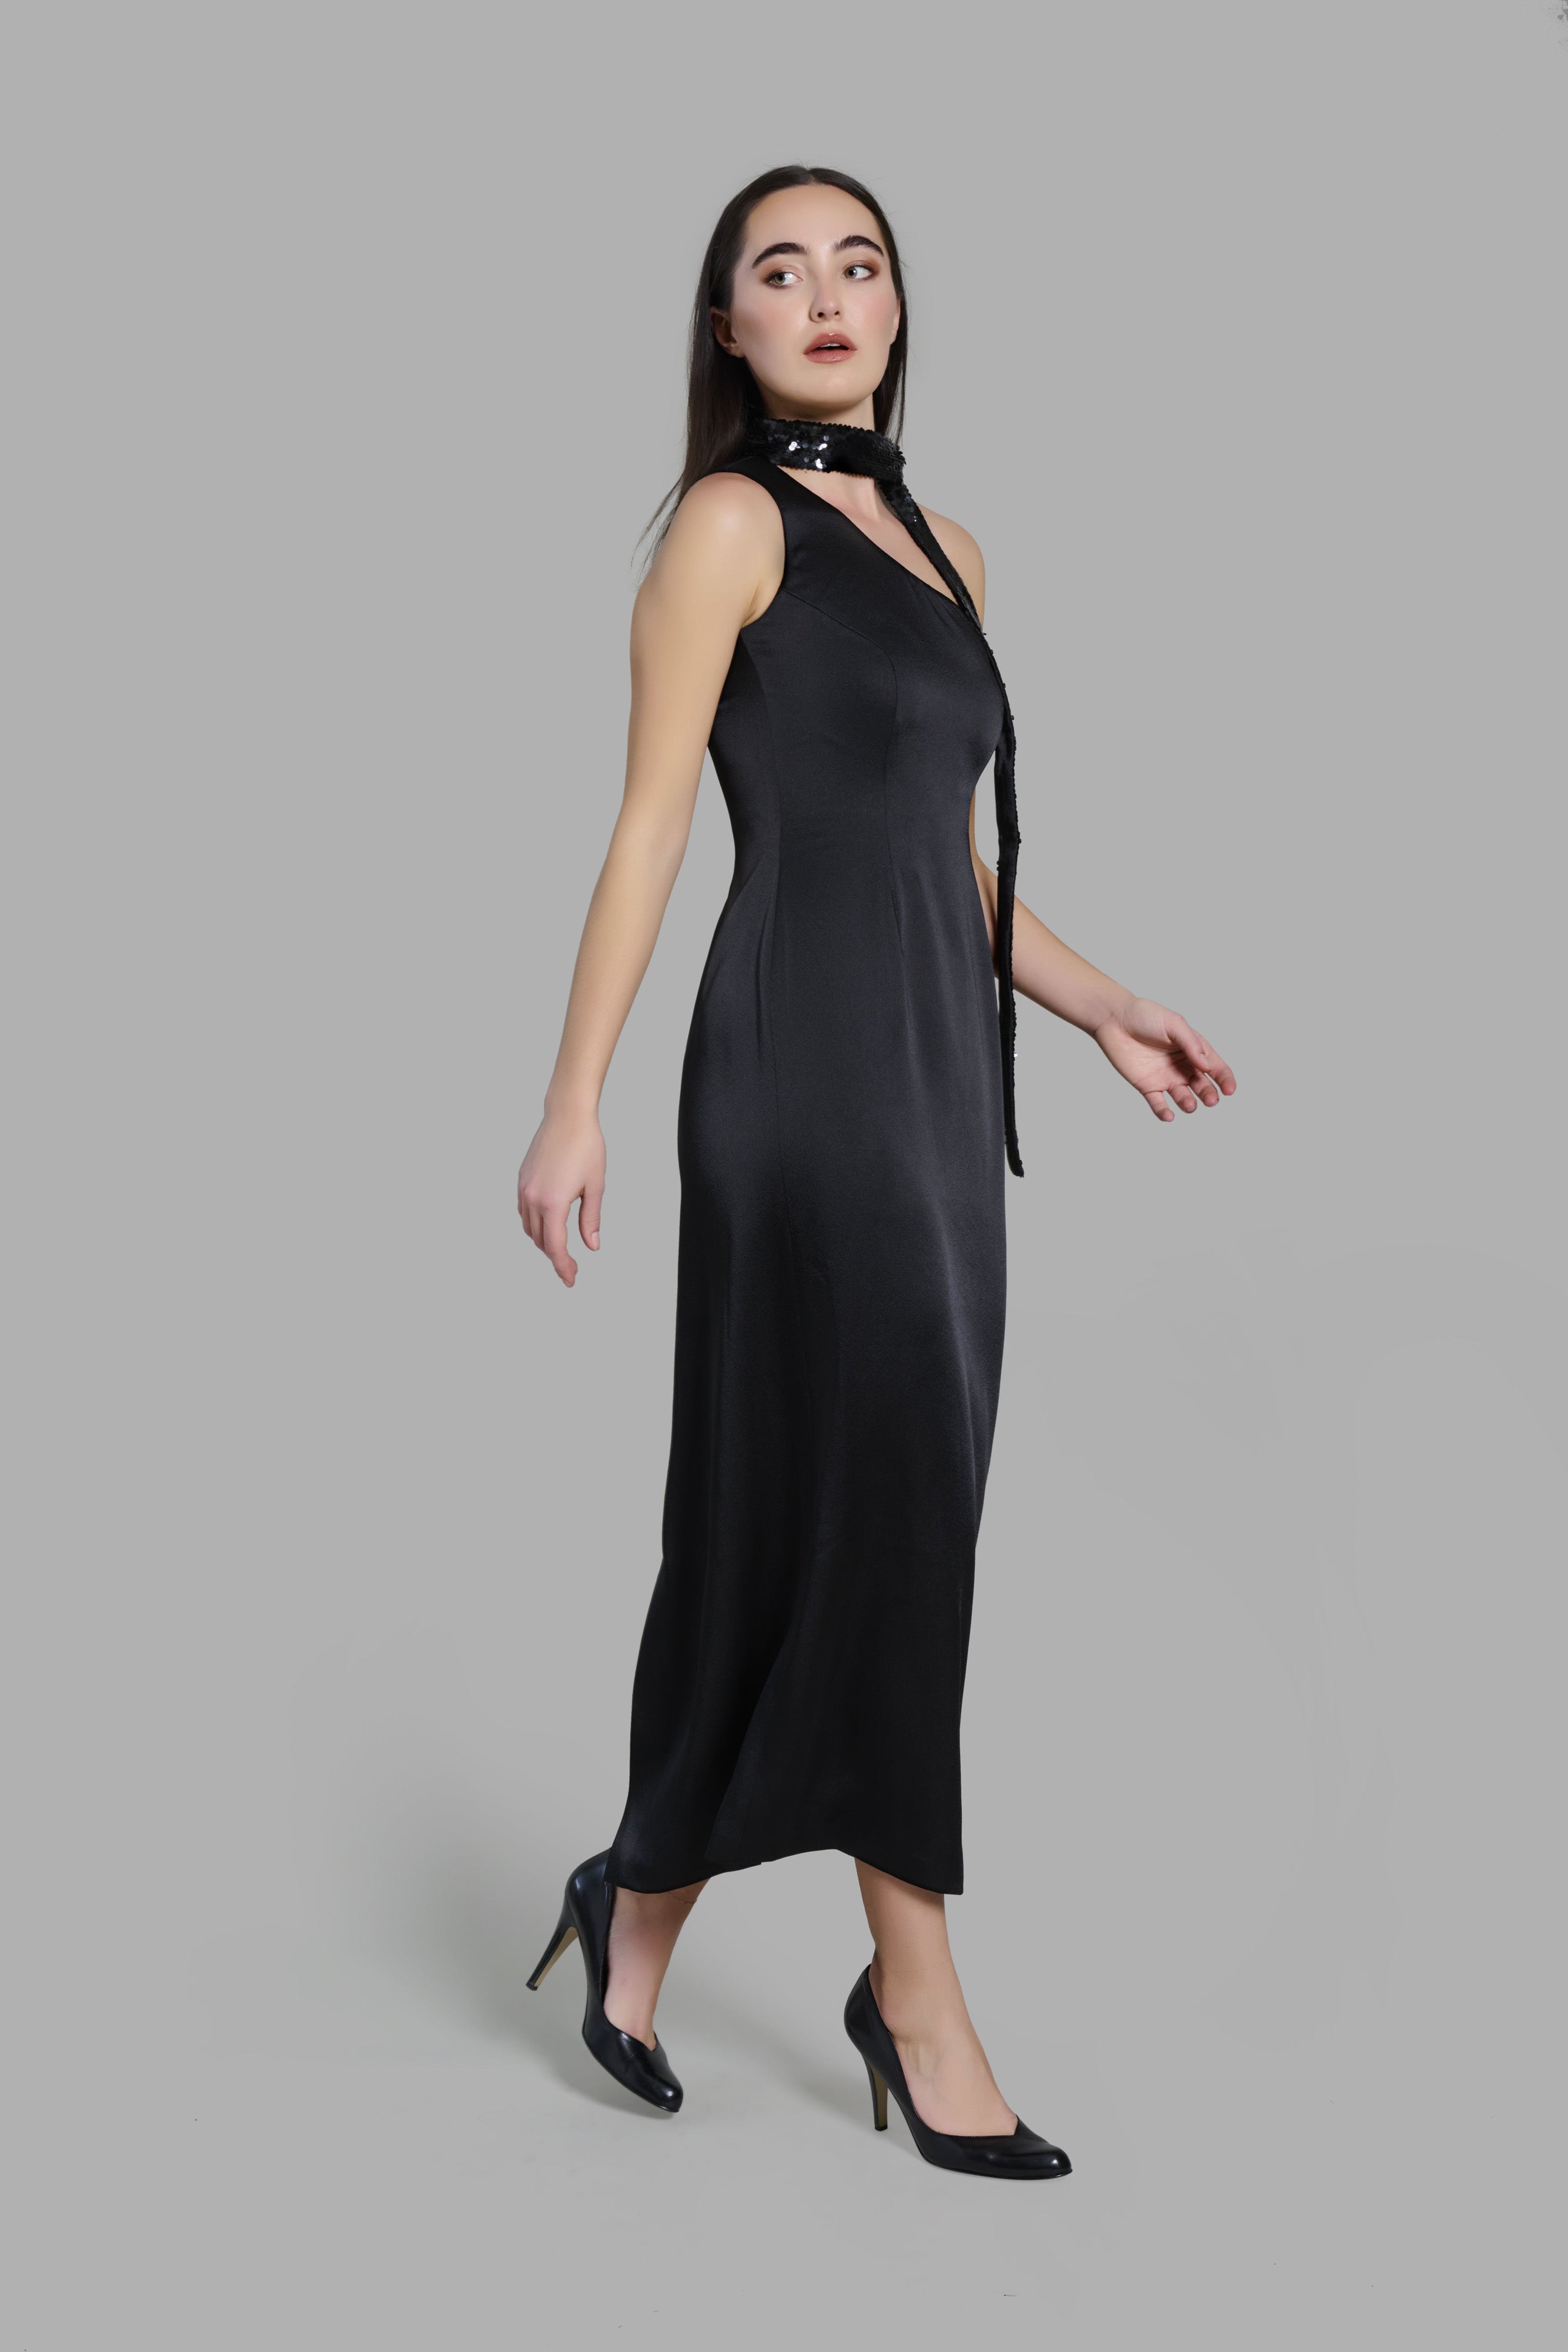 Black One-Shoulder Satin Dress